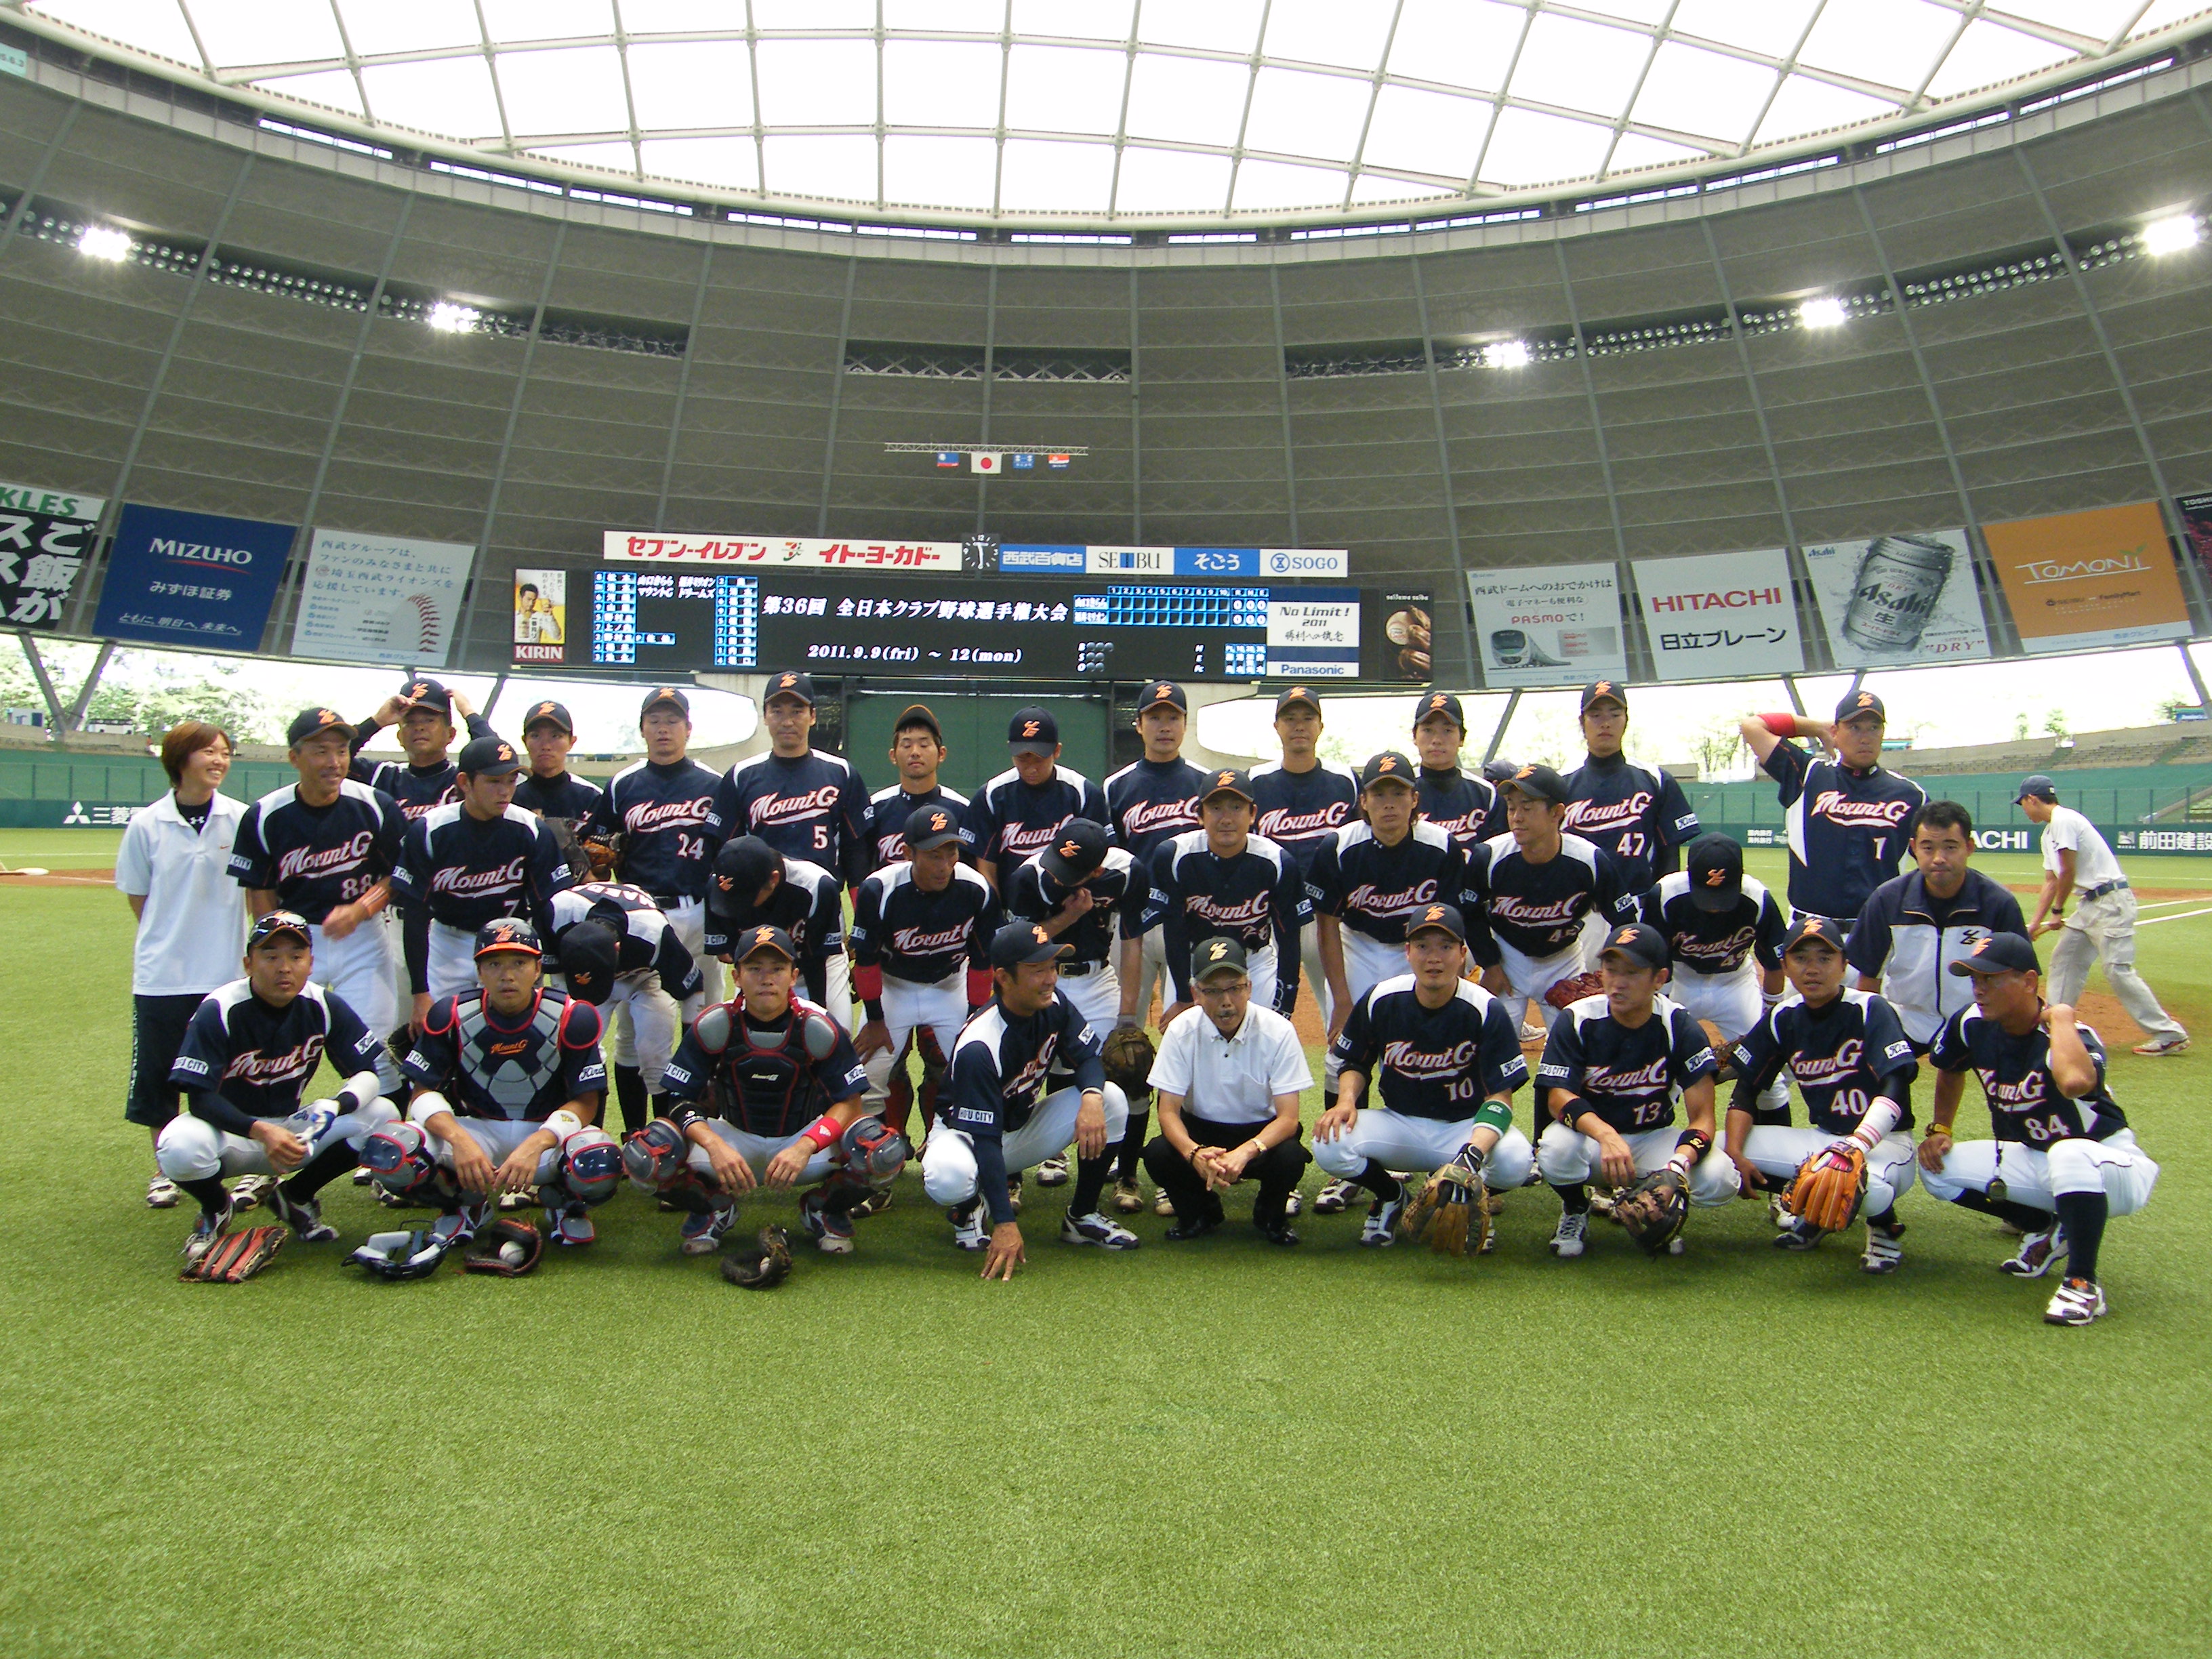 第36回全日本クラブ野球選手権大会、マウントG集合写真